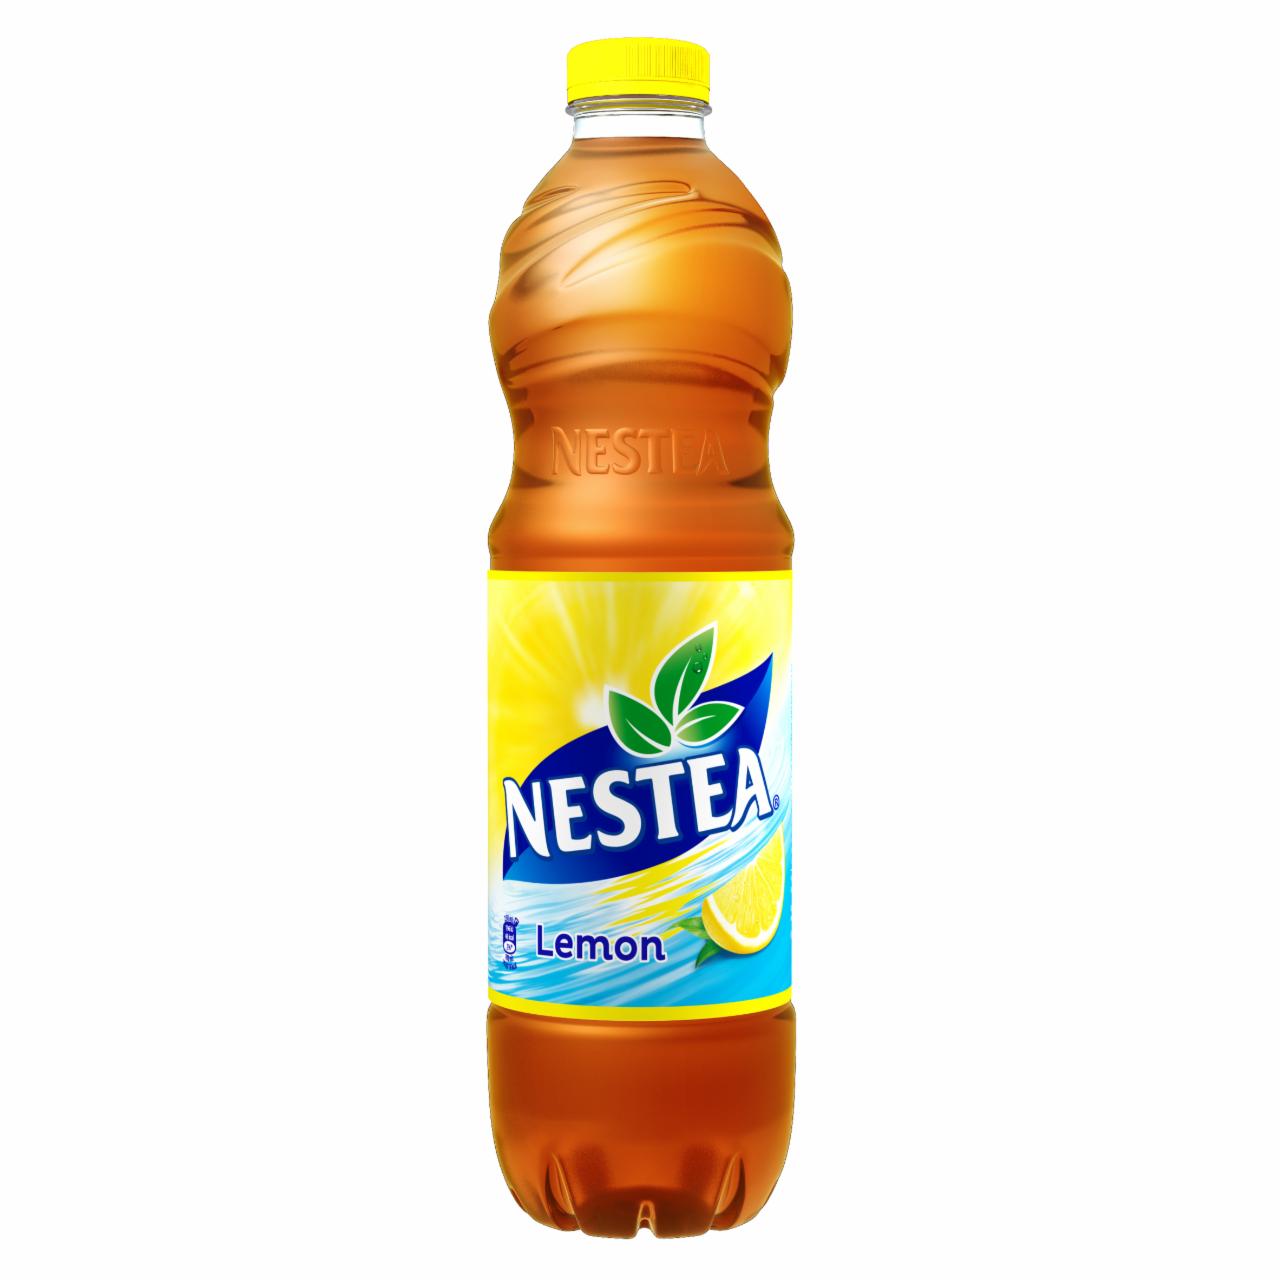 Képek - Nestea citrom ízű tea üdítőital, cukrokkal és édesítőszerrel 1,5 l